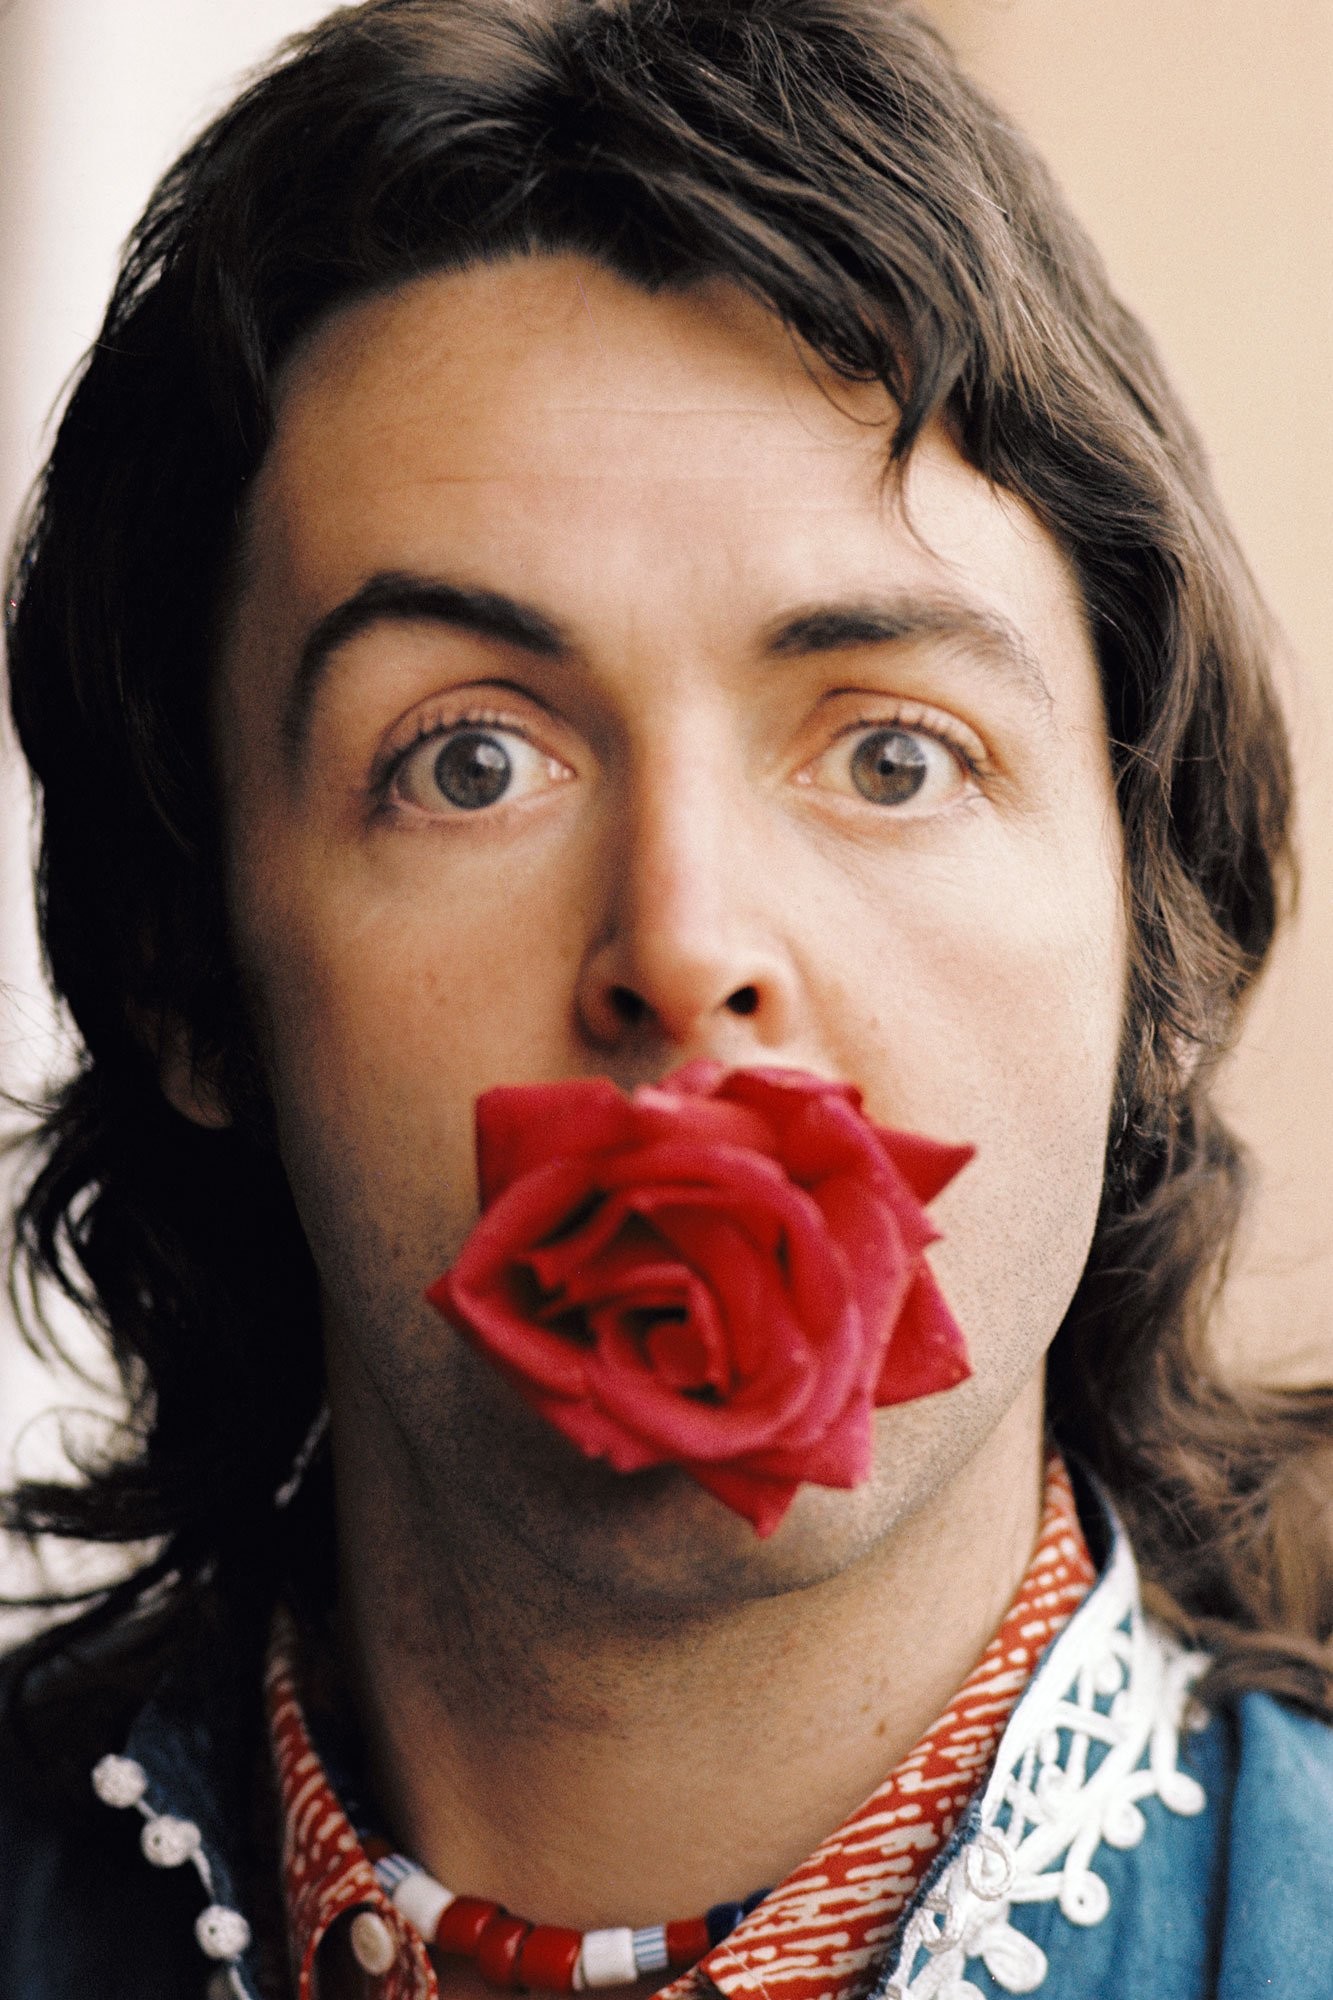 Paul McCartney em foto de Linda McCartney (Foto: Divulgação)